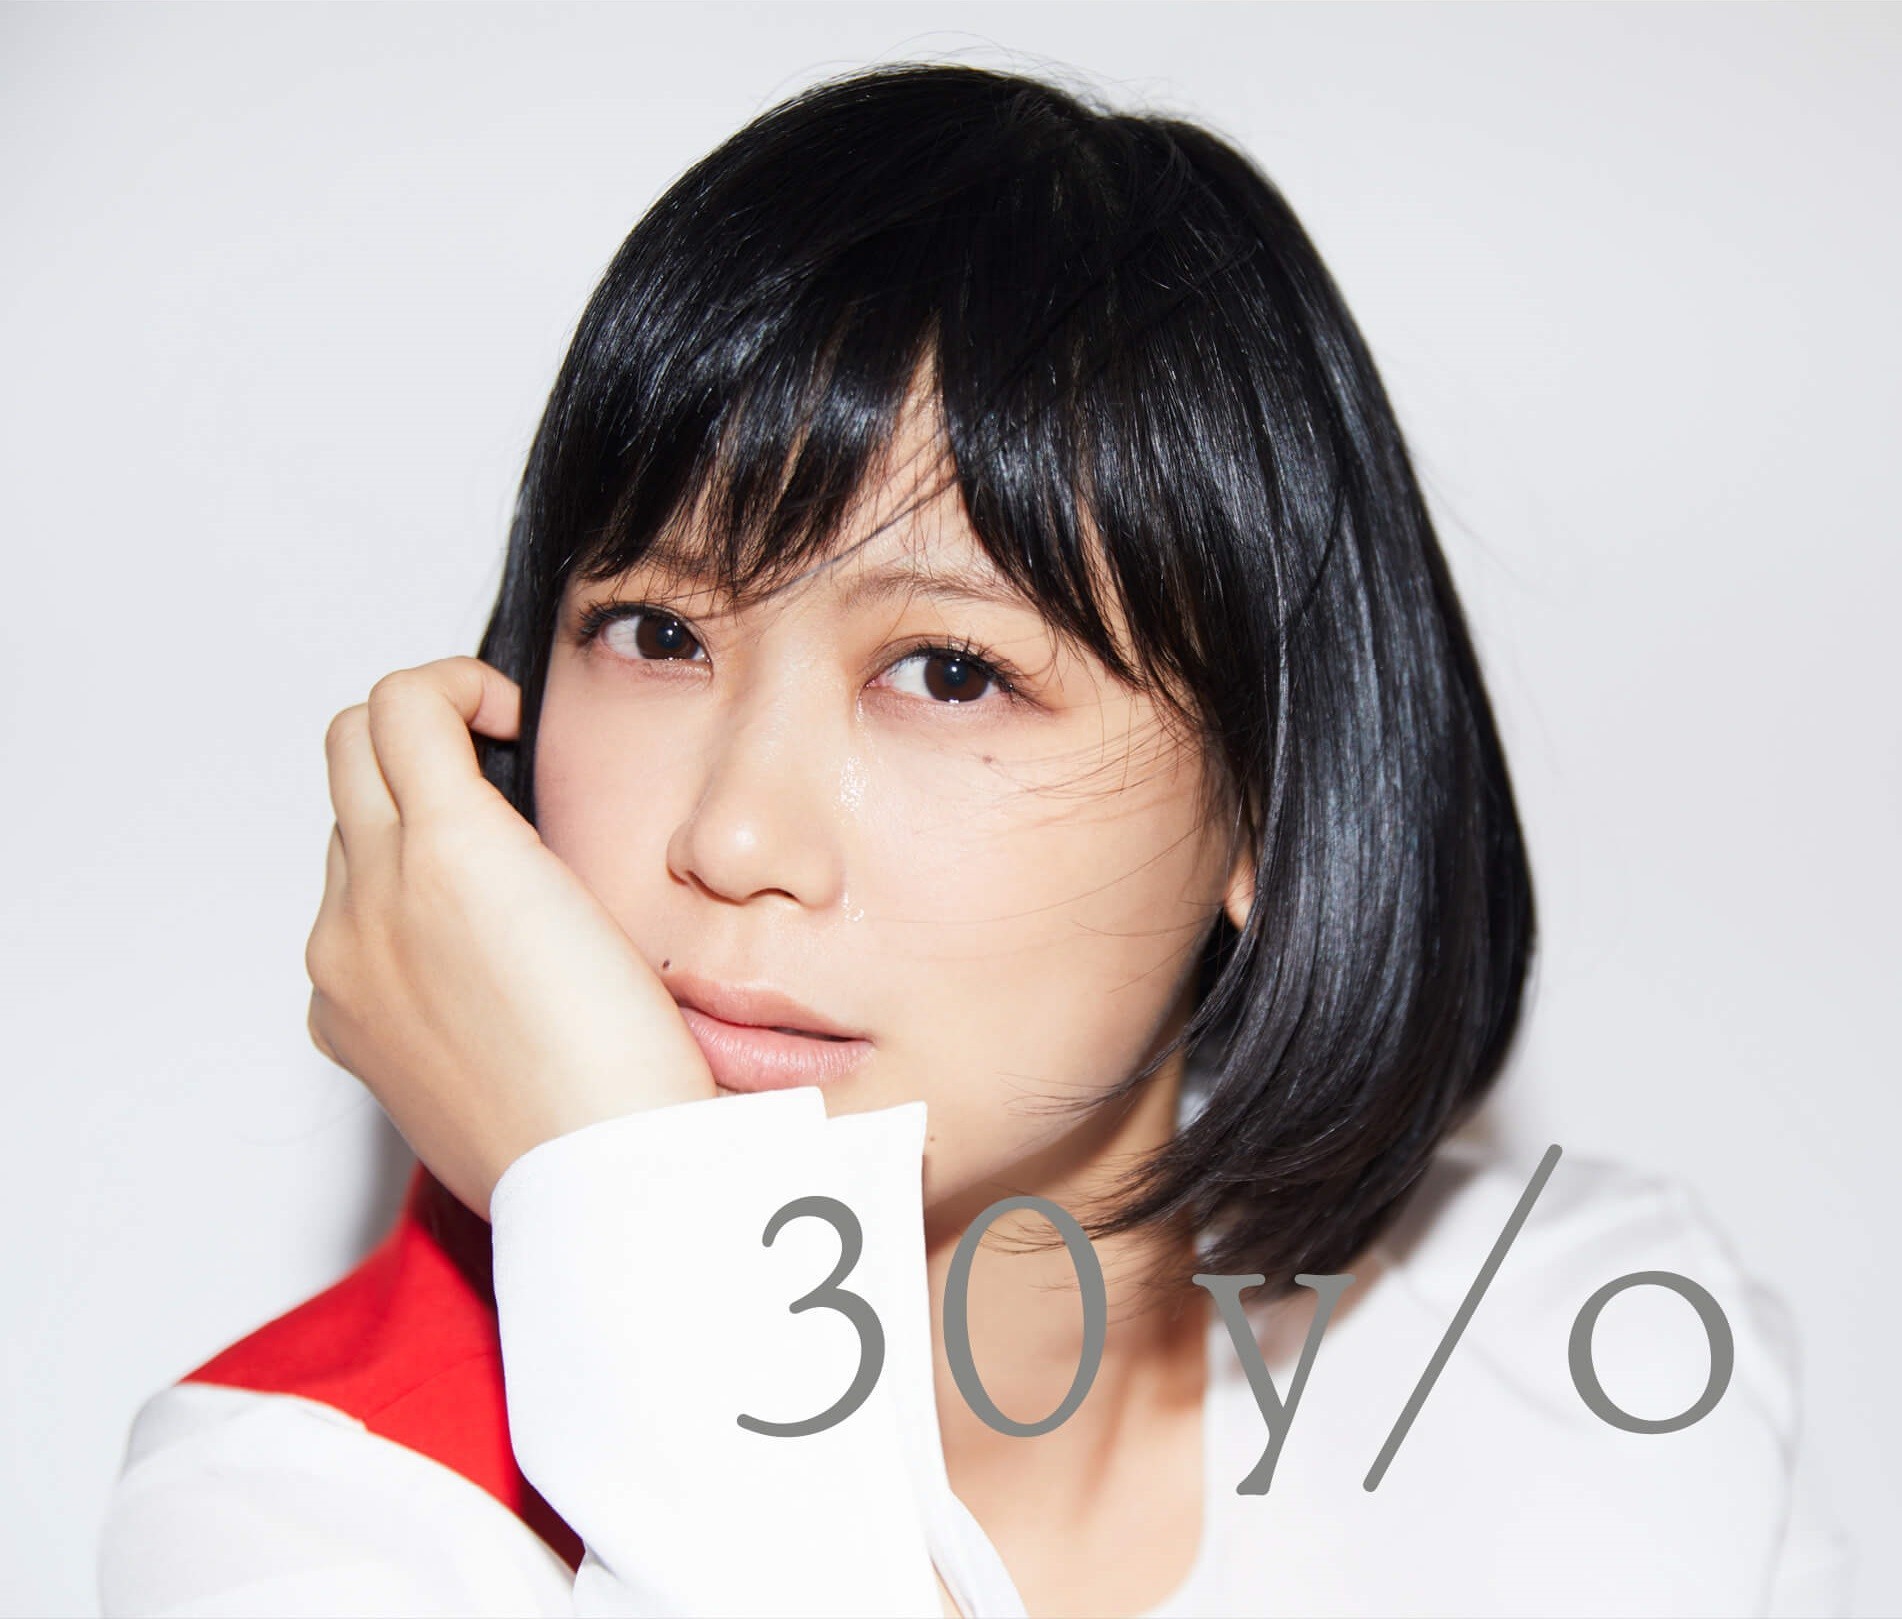 [Album] Ayaka (絢香) – 30 y/o (2018-11-14) [FLAC 24bit/96kHz]